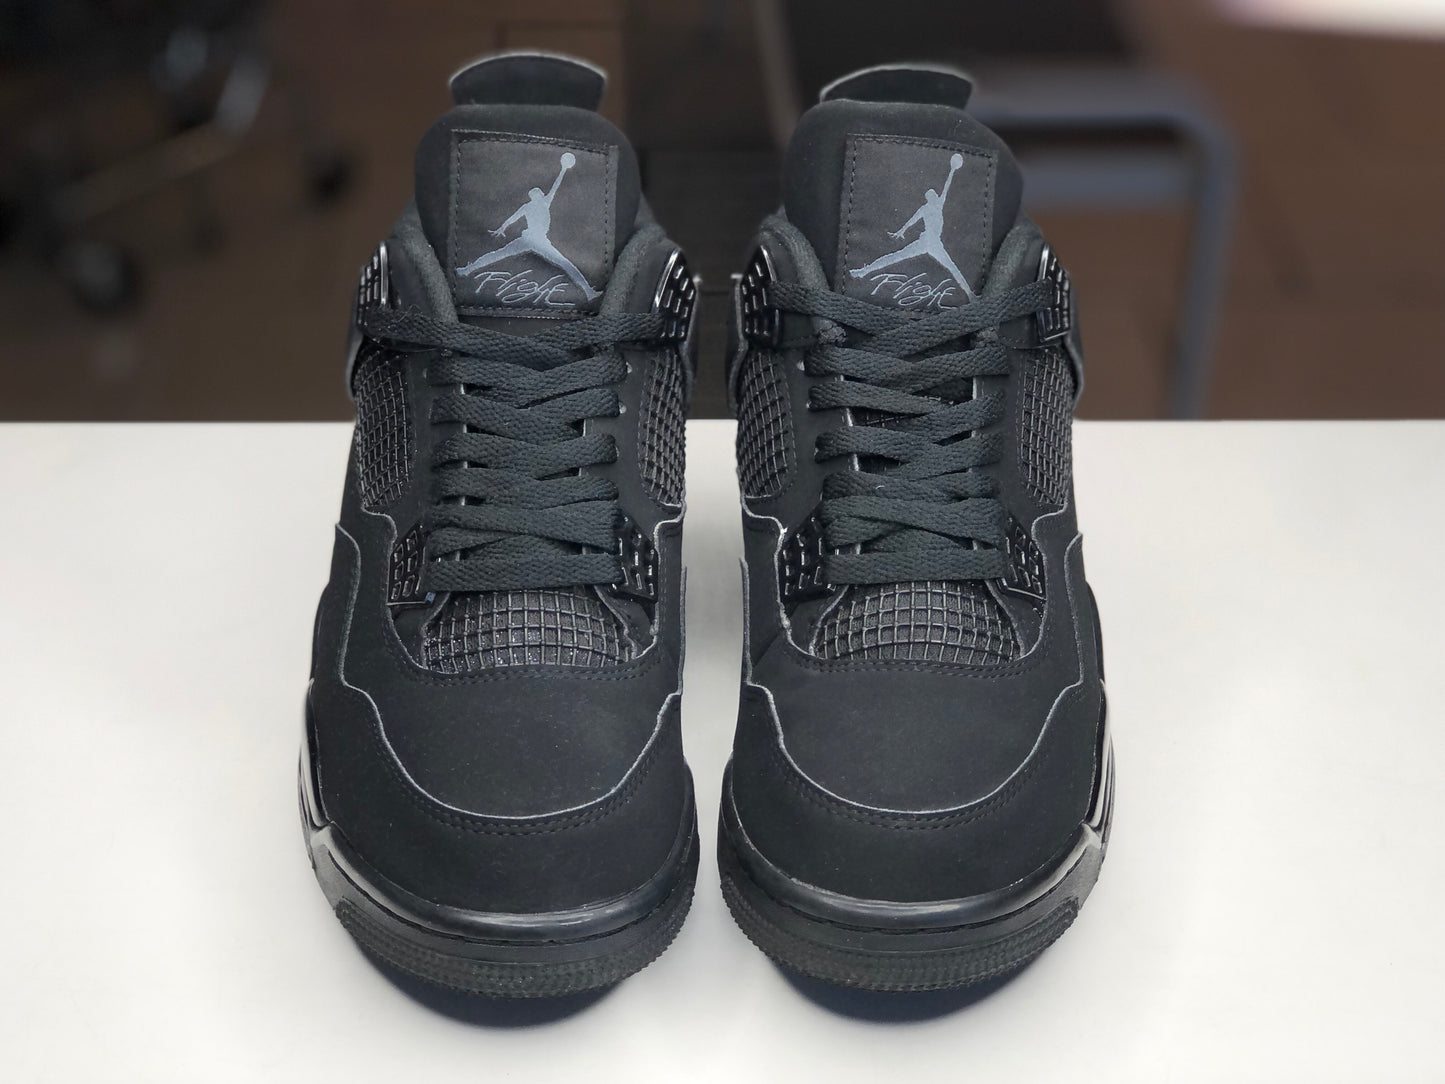 Jordan 4 Black Cat 2020 Size 7.5